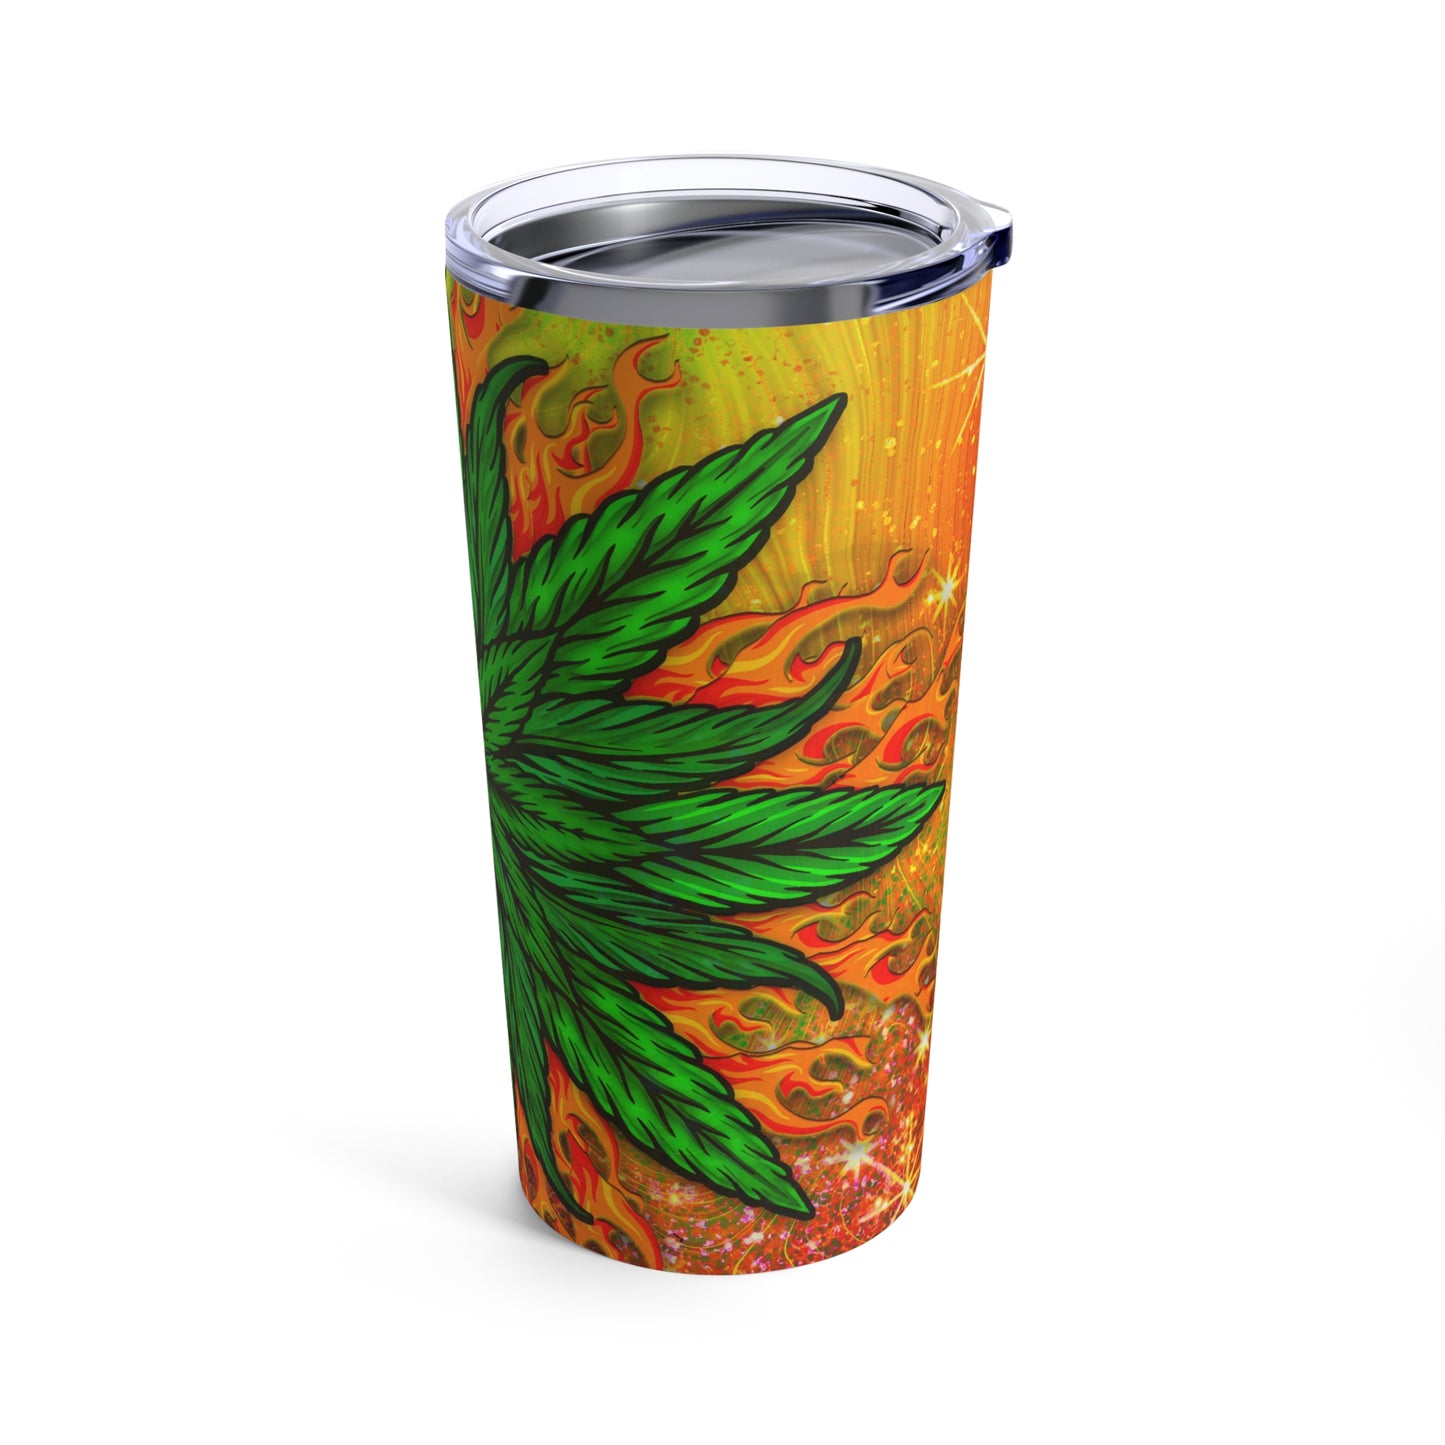 Amazing Orange Green Collage Marijuana Elegantly Designed 420 Weed Tumbler 20oz